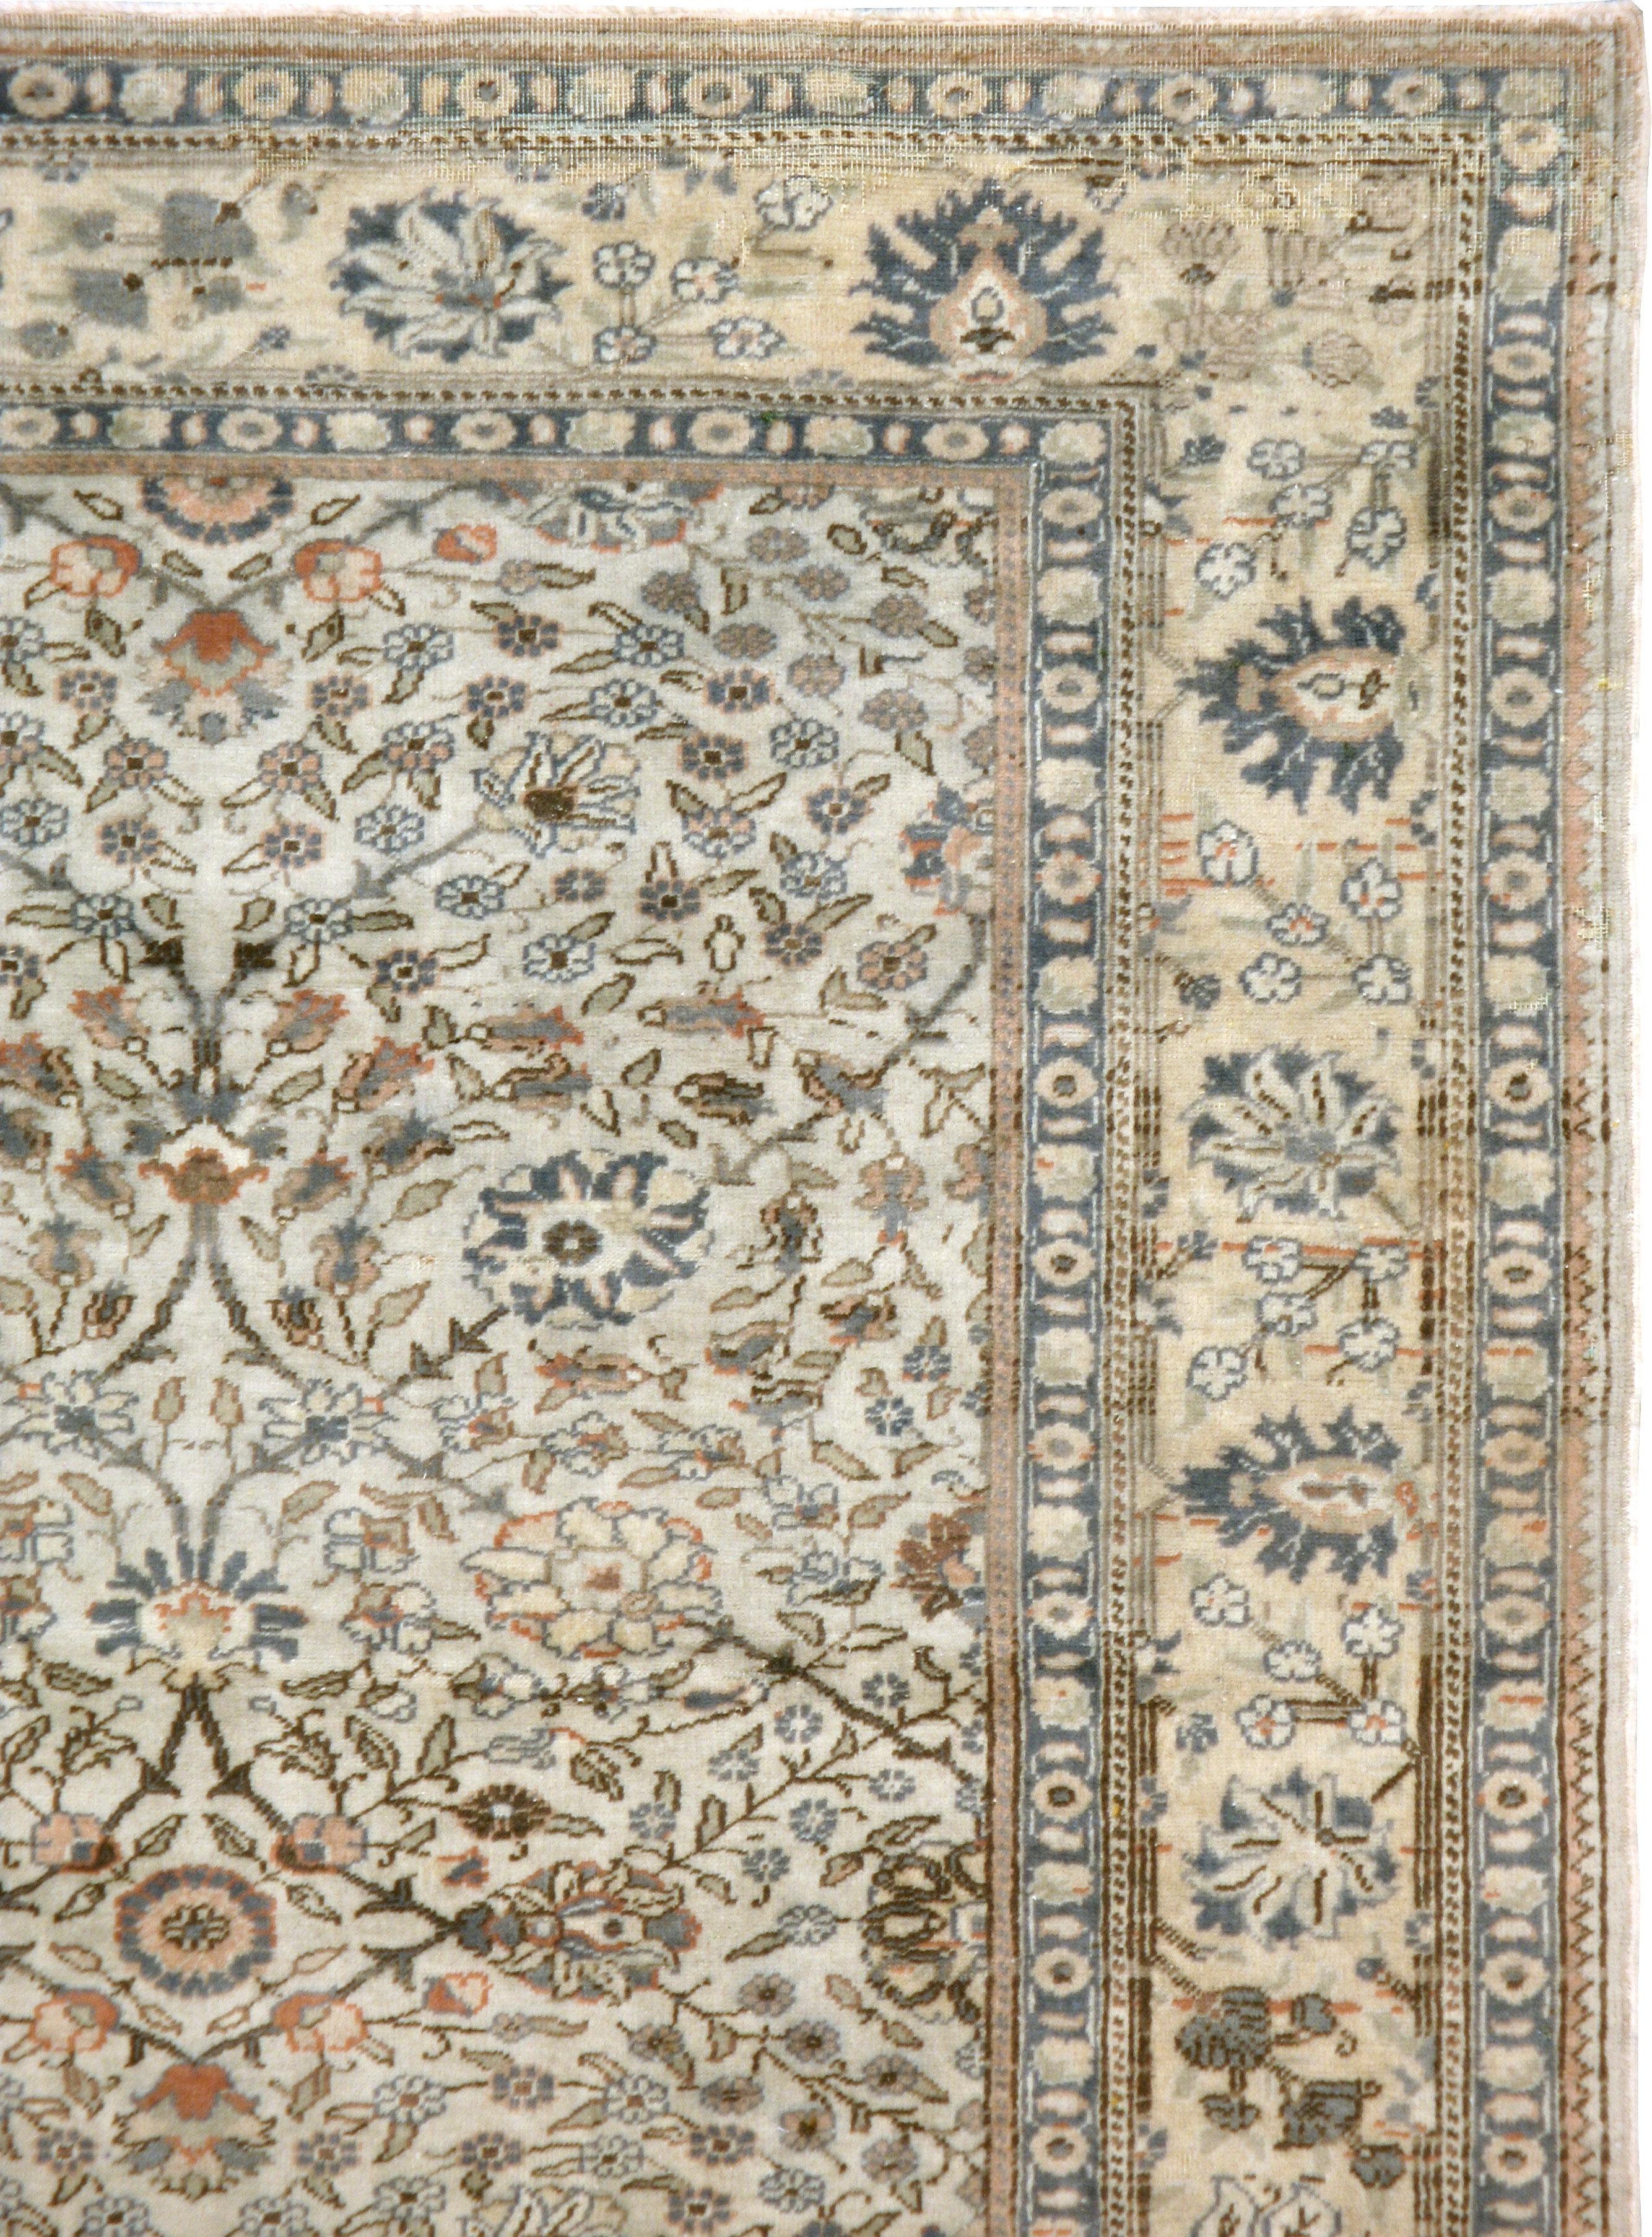 Ein alter türkischer Sivas-Teppich aus der Mitte des 20. Jahrhunderts. Der elfenbeinfarbene Grund dieses osttürkischen Stadtteppichs ist hauptsächlich mit dünnen Ranken und Wirbeln aus kleinen Blättern verziert. In der strohgelben Hauptbordüre